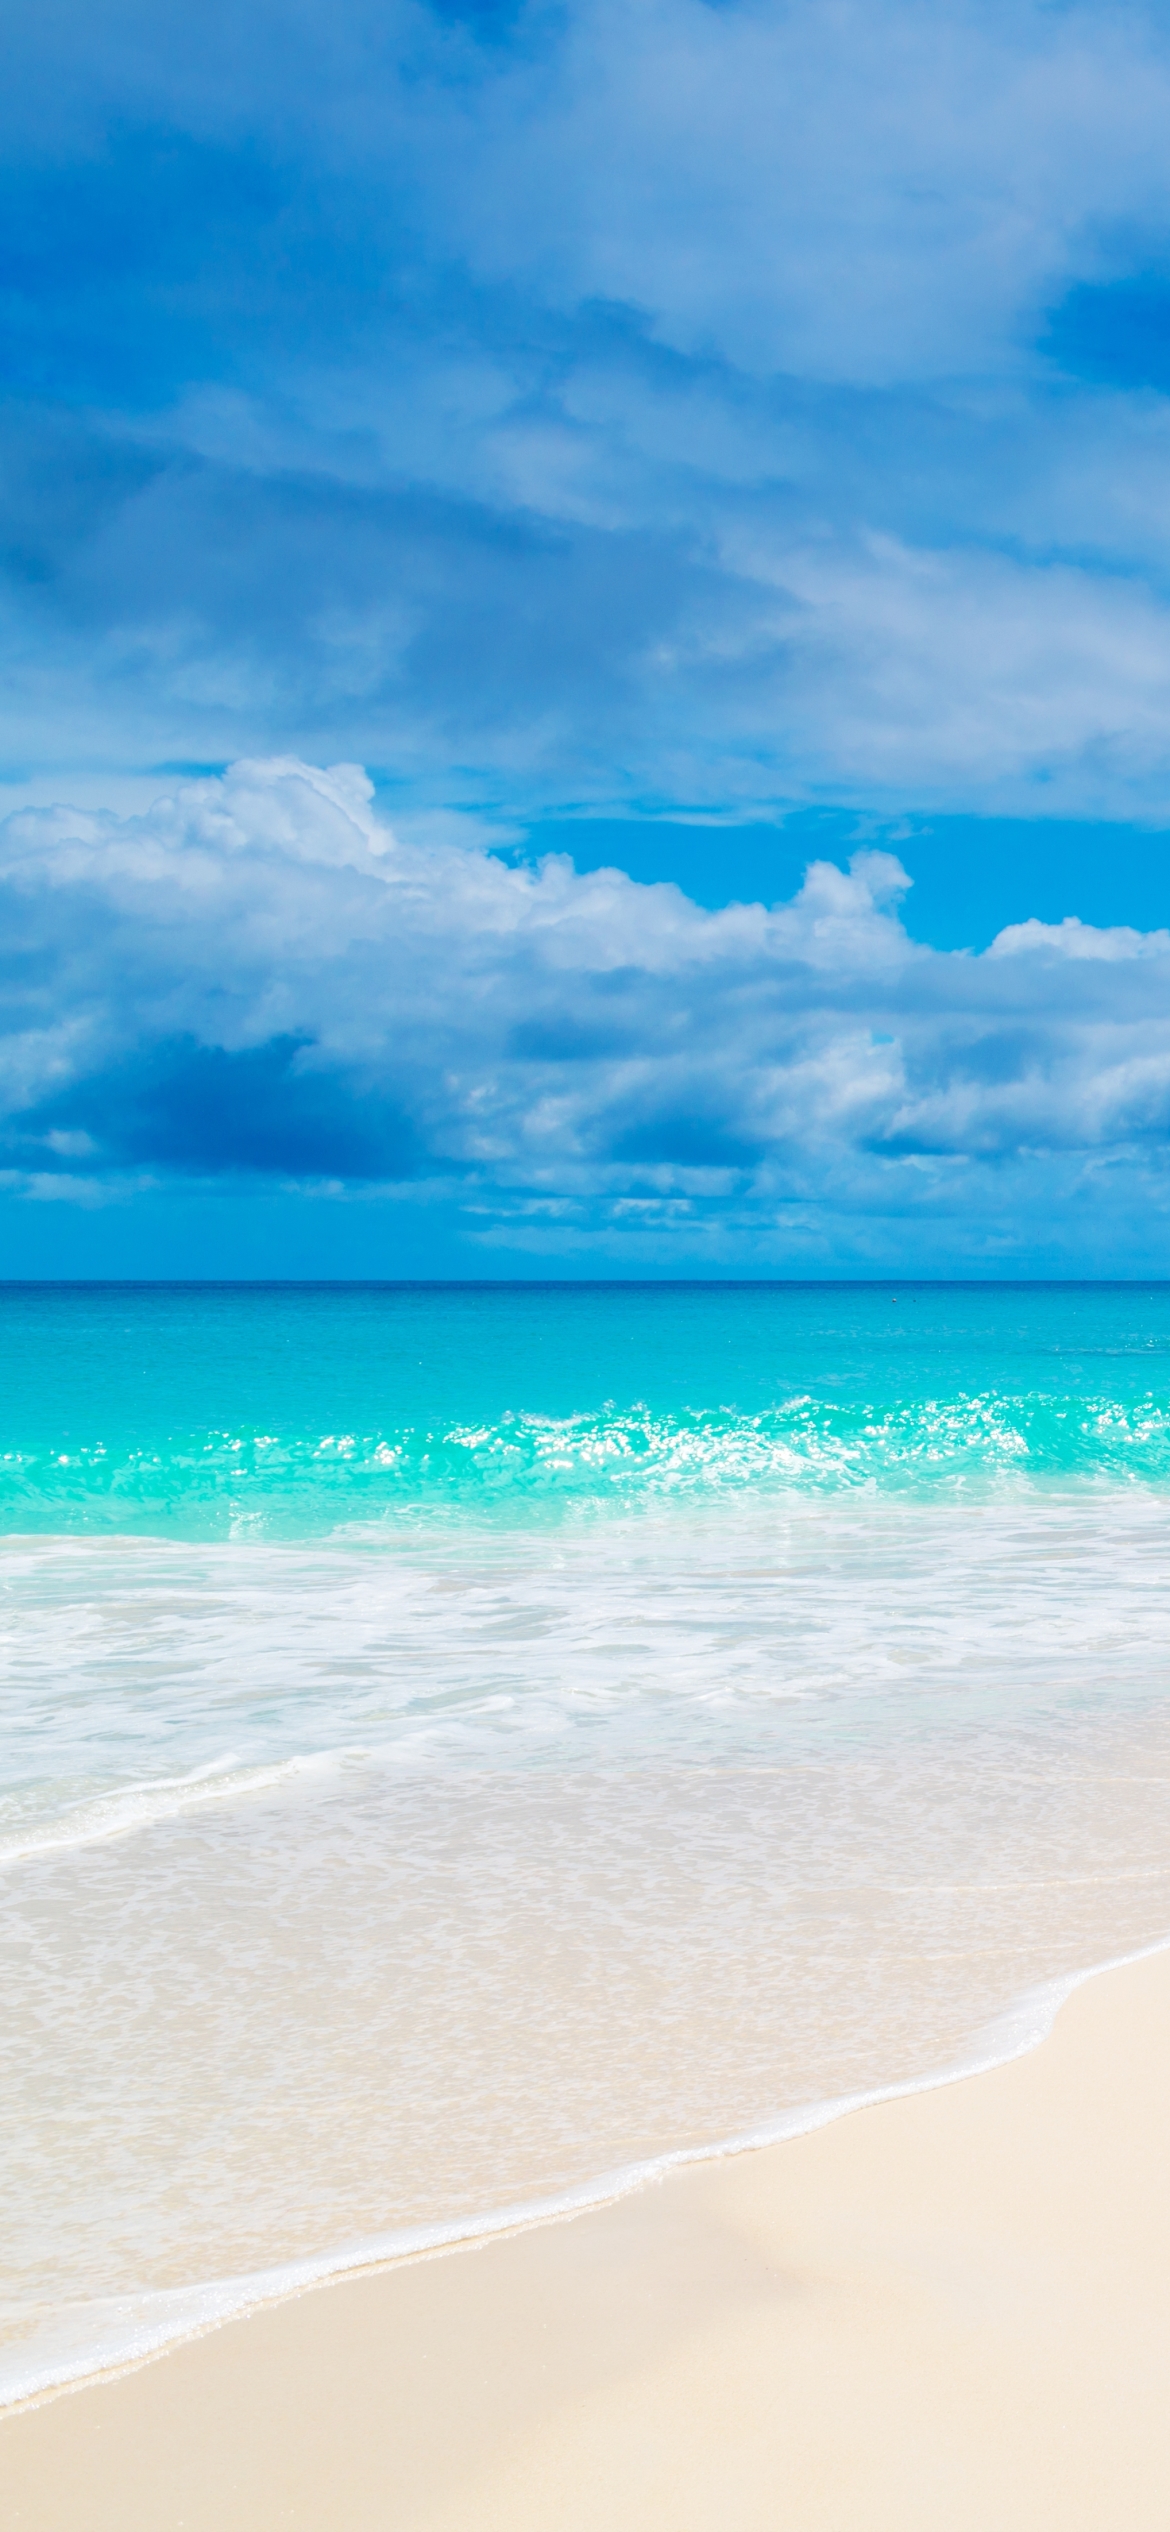 Descarga gratuita de fondo de pantalla para móvil de Playa, Océano, Maldivas, Seychelles, Tierra/naturaleza.